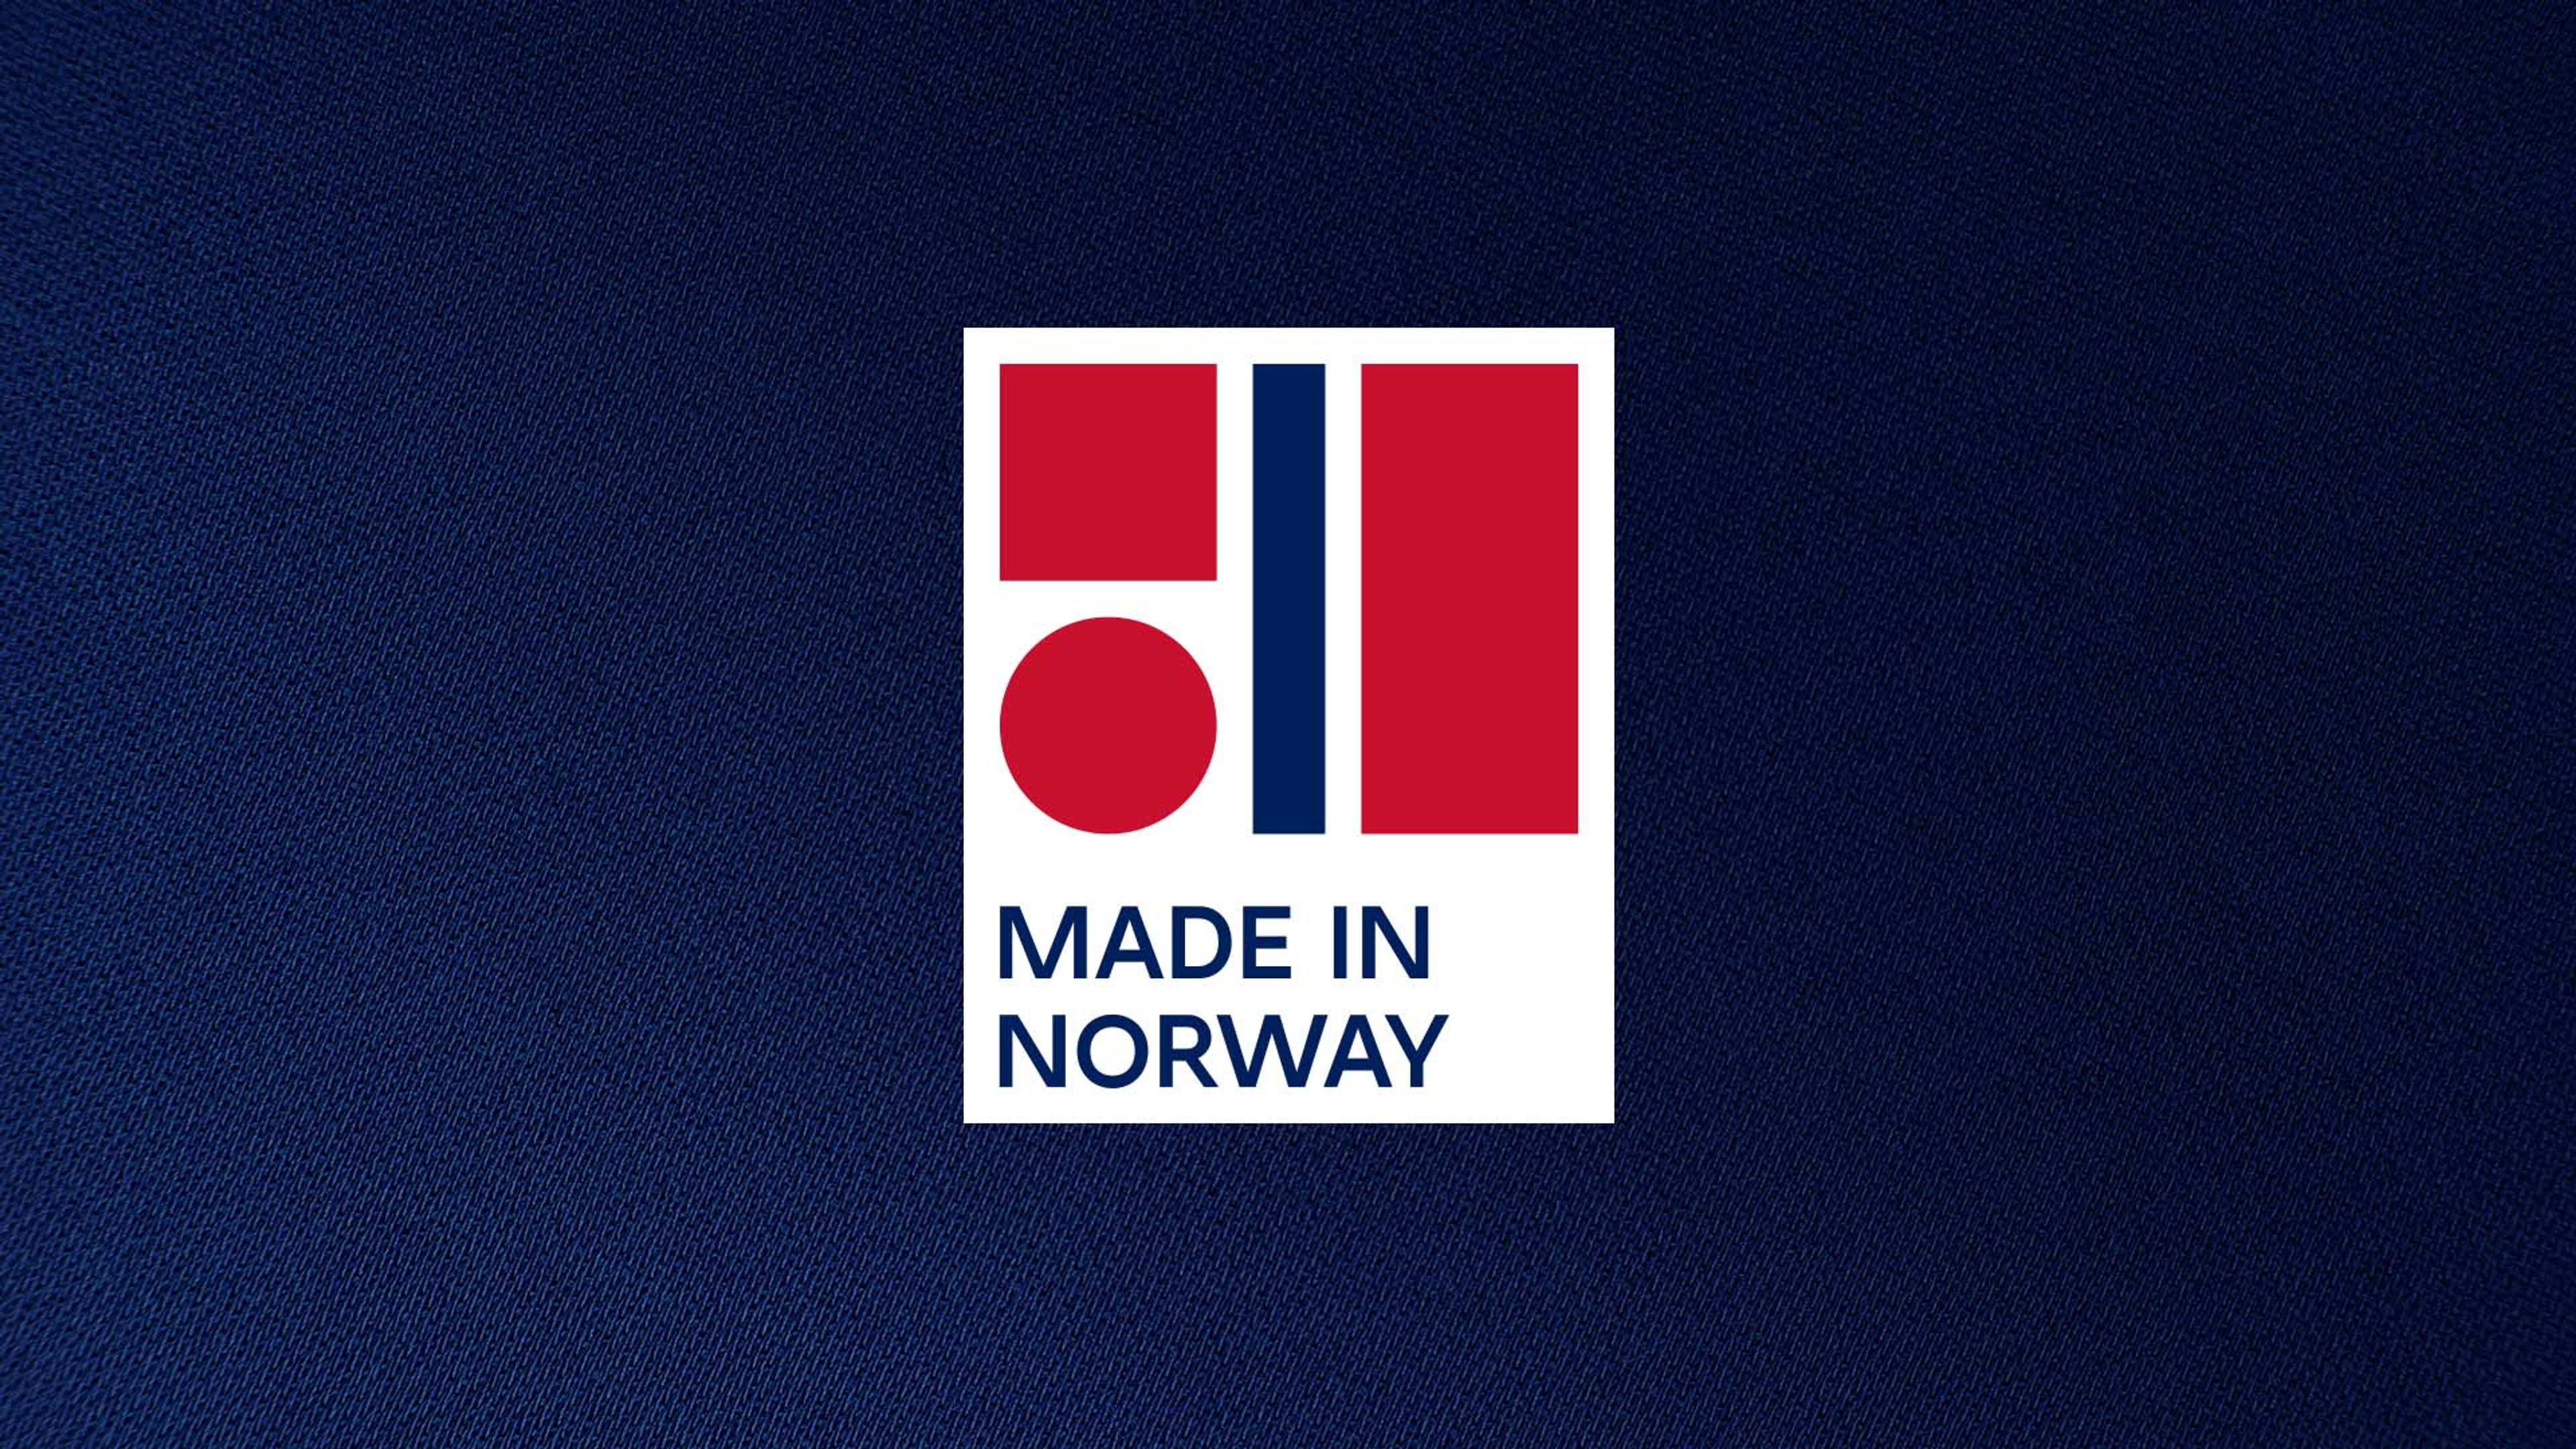 Opphavsmerket Made in Norway